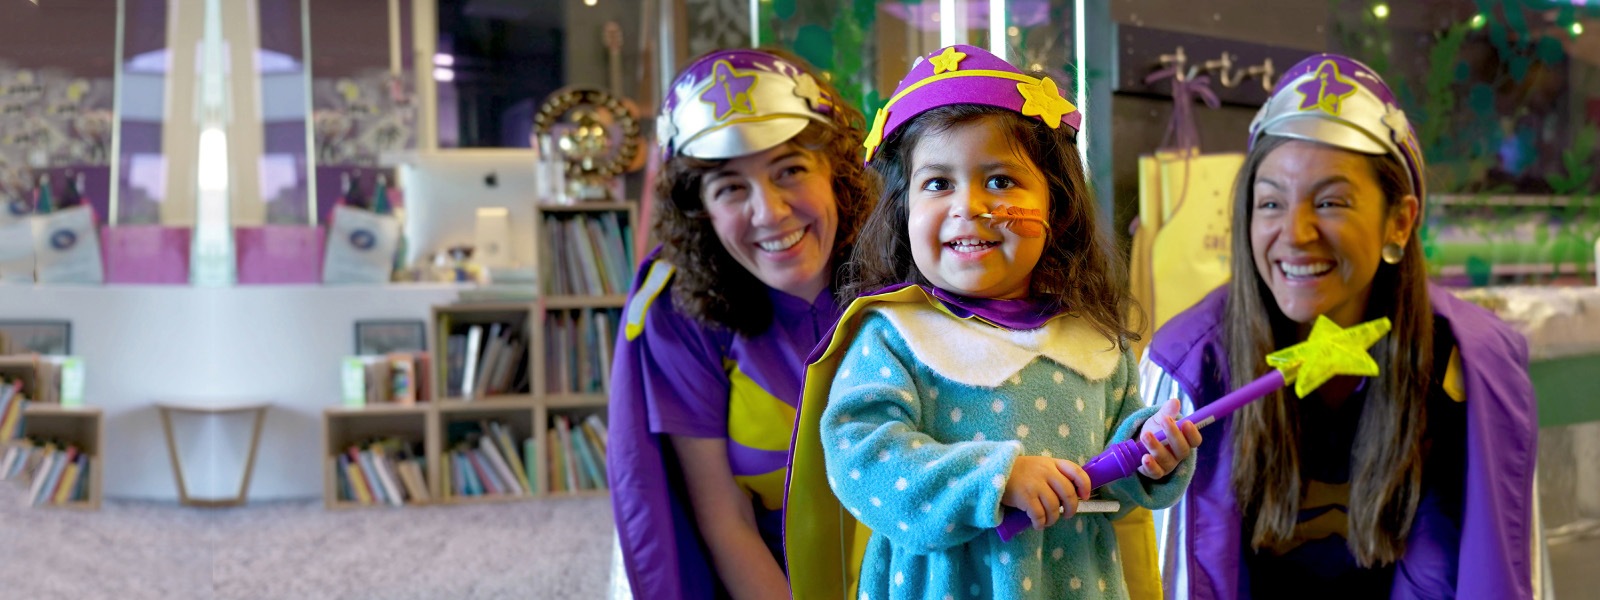 Zwei erwachsene Freiwillige in Verkleidungskostümen lachen neben einem ebenfalls verkleideten kleinen Kind, das einen Zauberstab hält